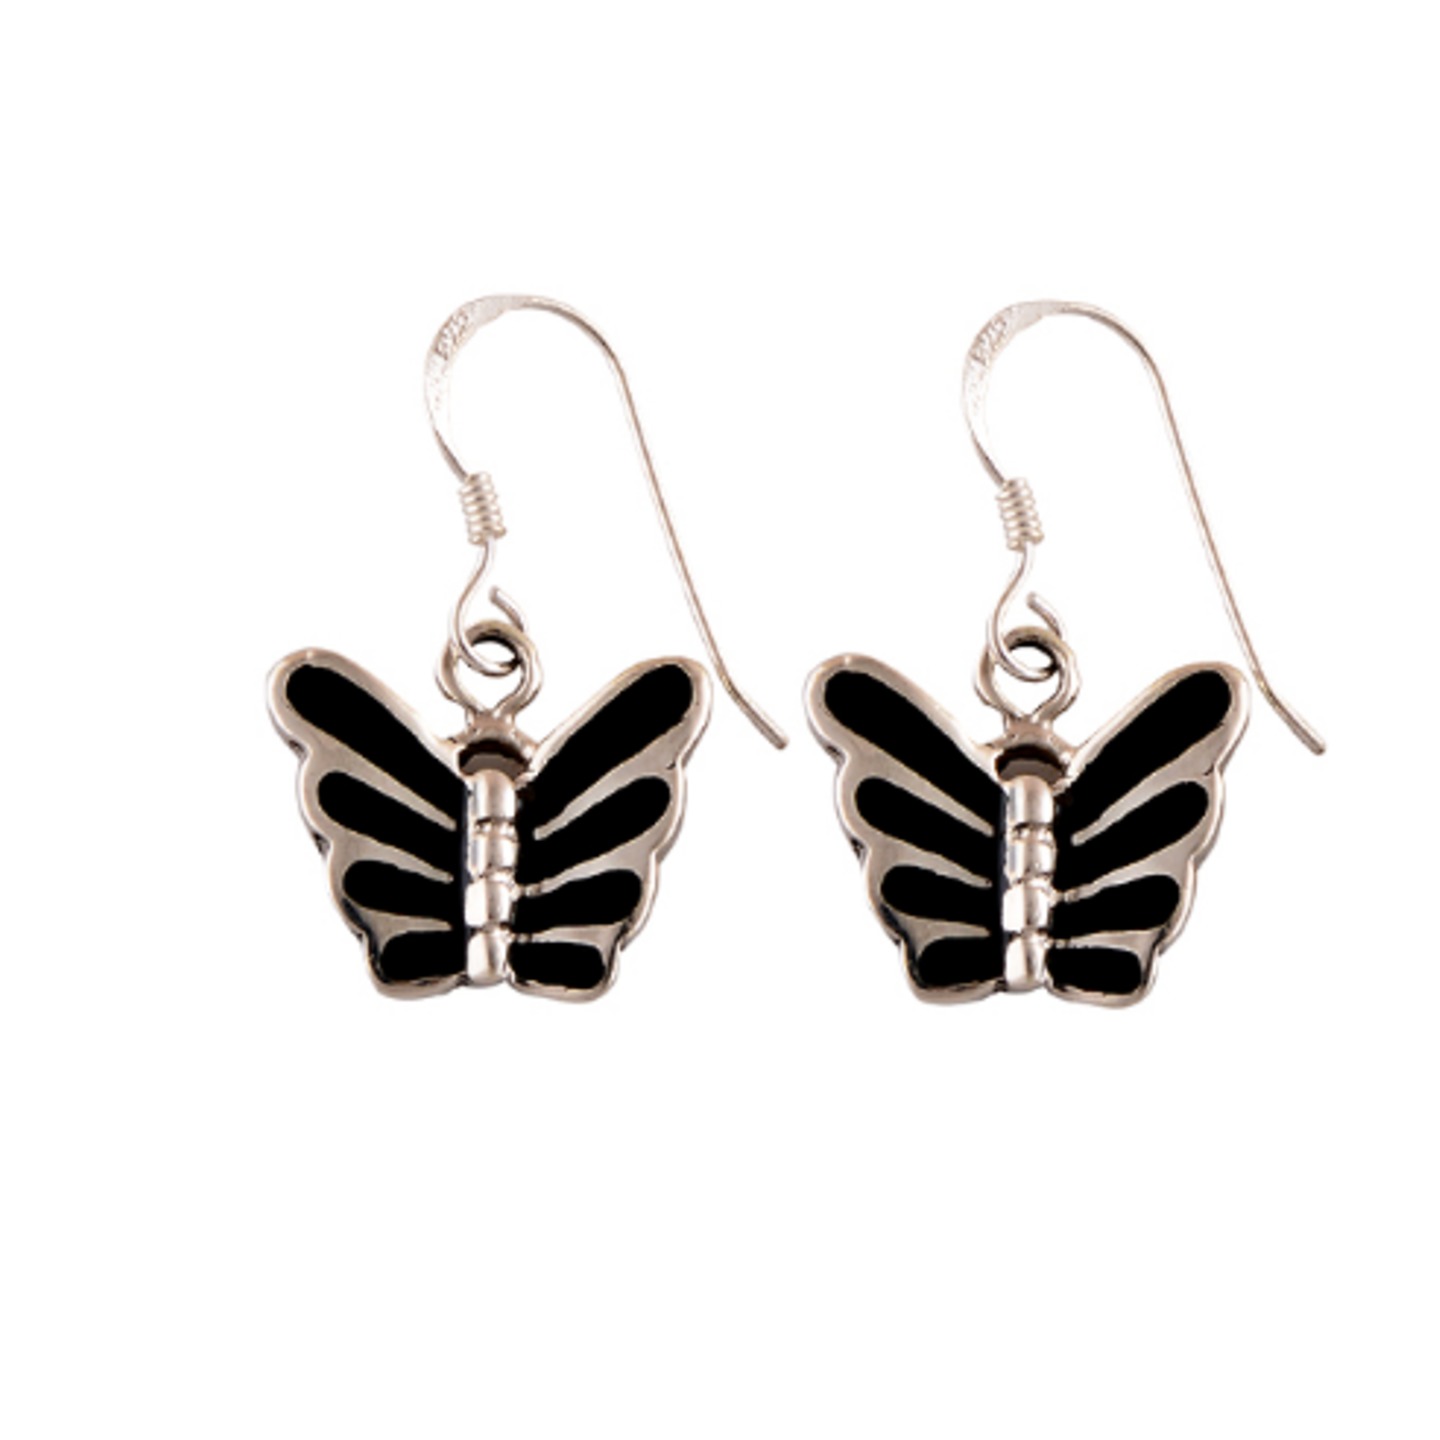 The Butterfly Black Onyx Silver Earrings